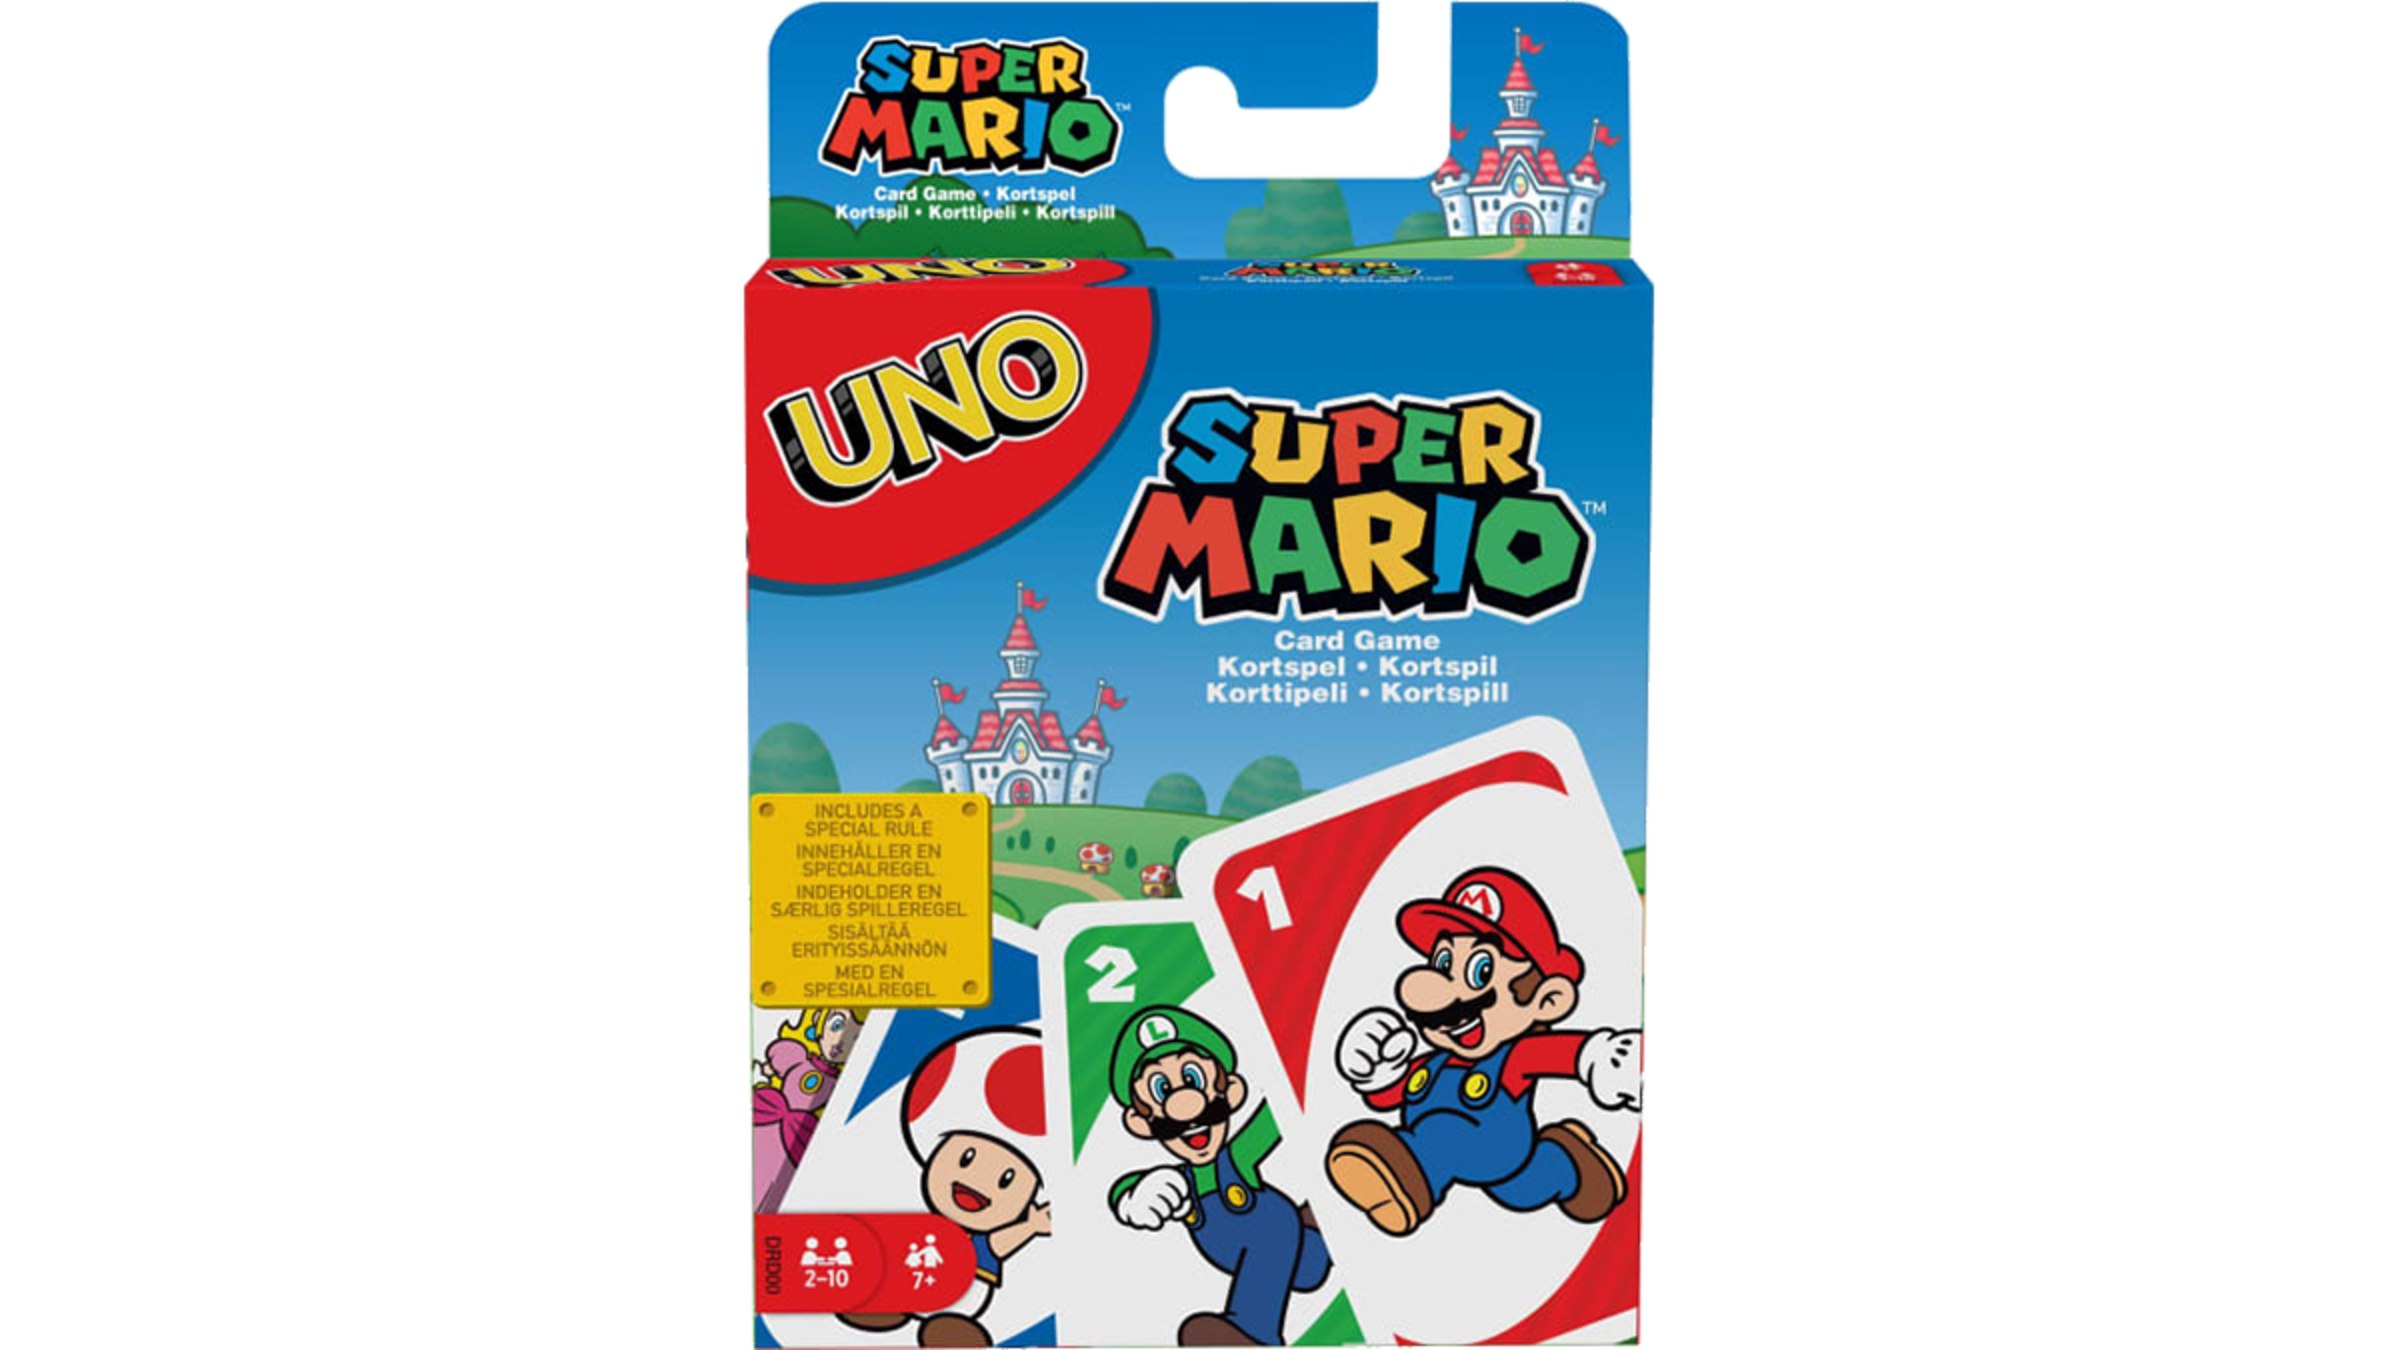 UNO - Super Mario Bros. - Site officiel Nintendo